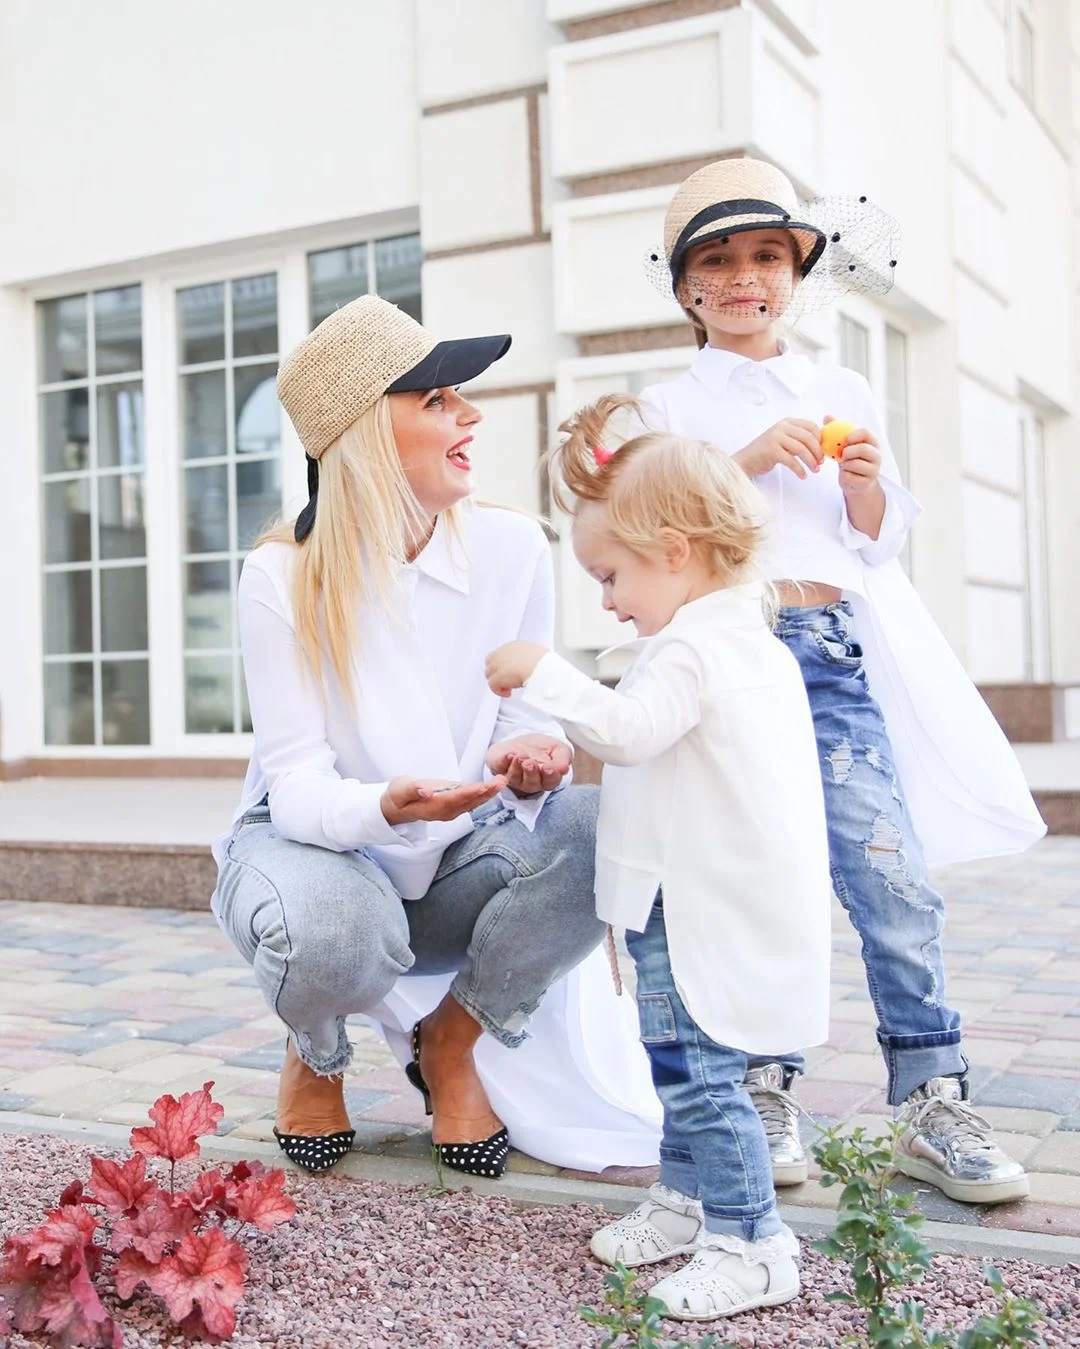 Лилия Ребрик растрогала семейной фотосессией с маленькими дочерьми - фото 449317